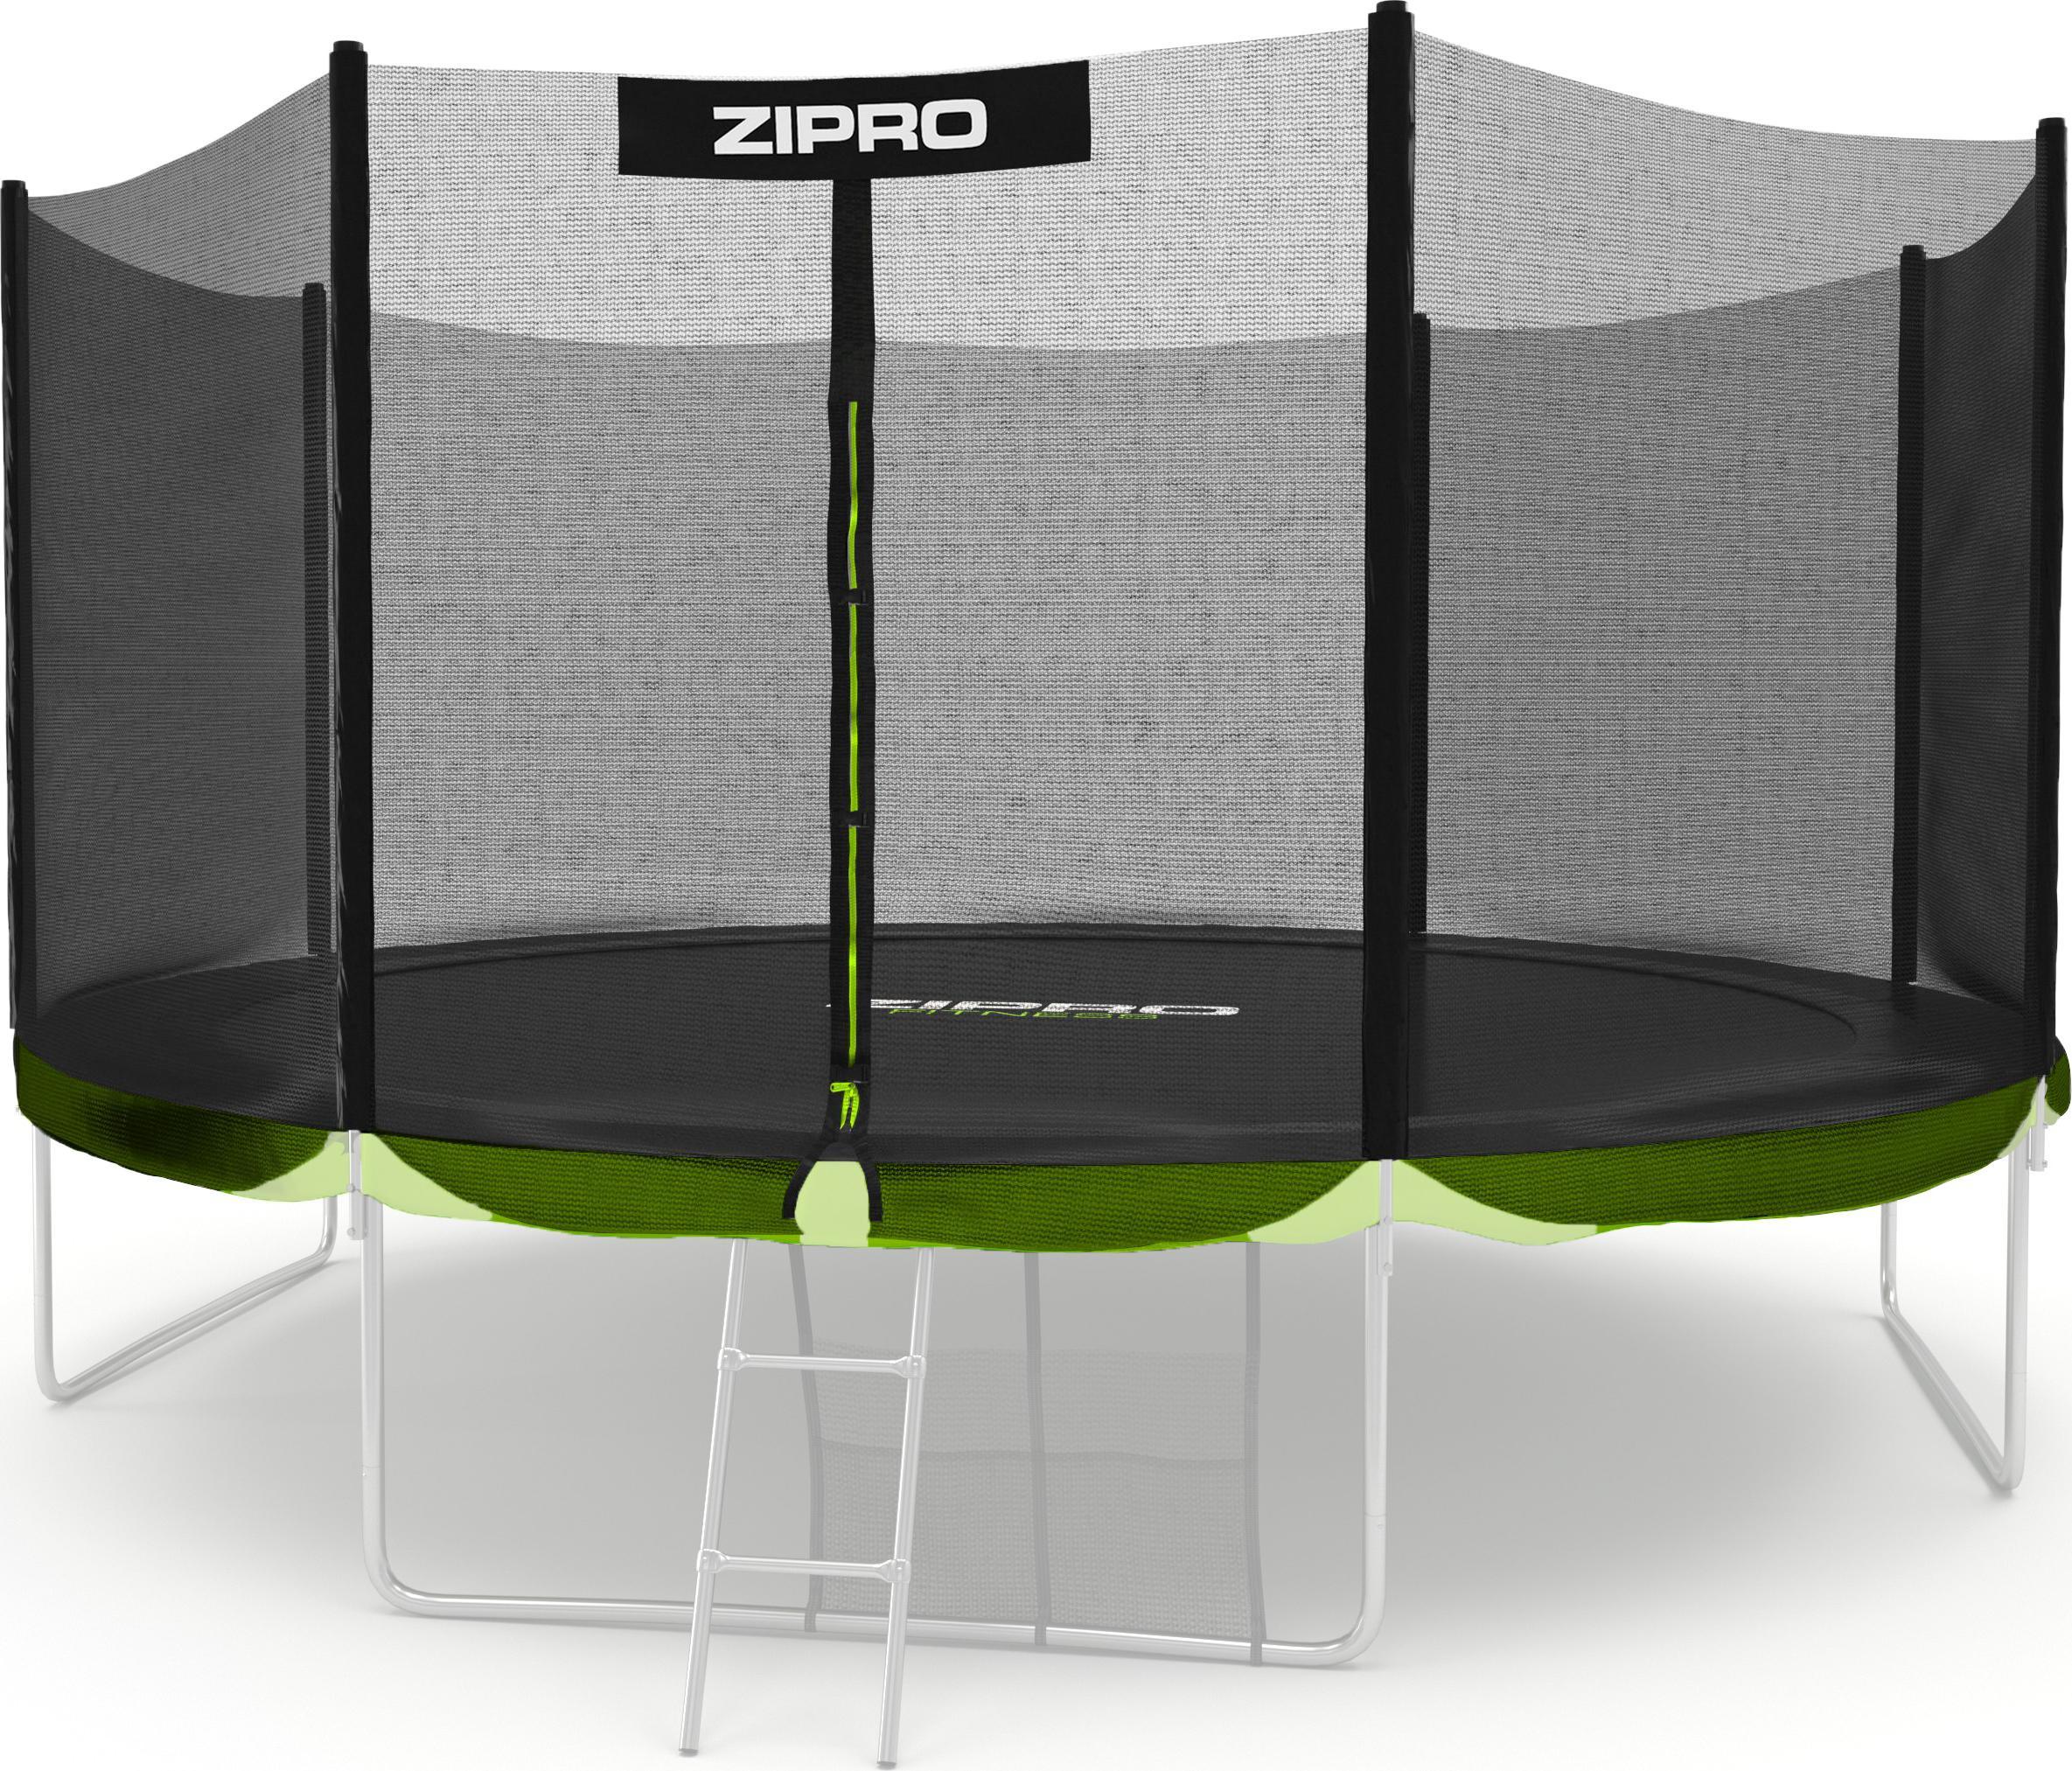 Zipro Siatka ochronna zewnetrzna do trampoliny 12FT/374cm 5825360